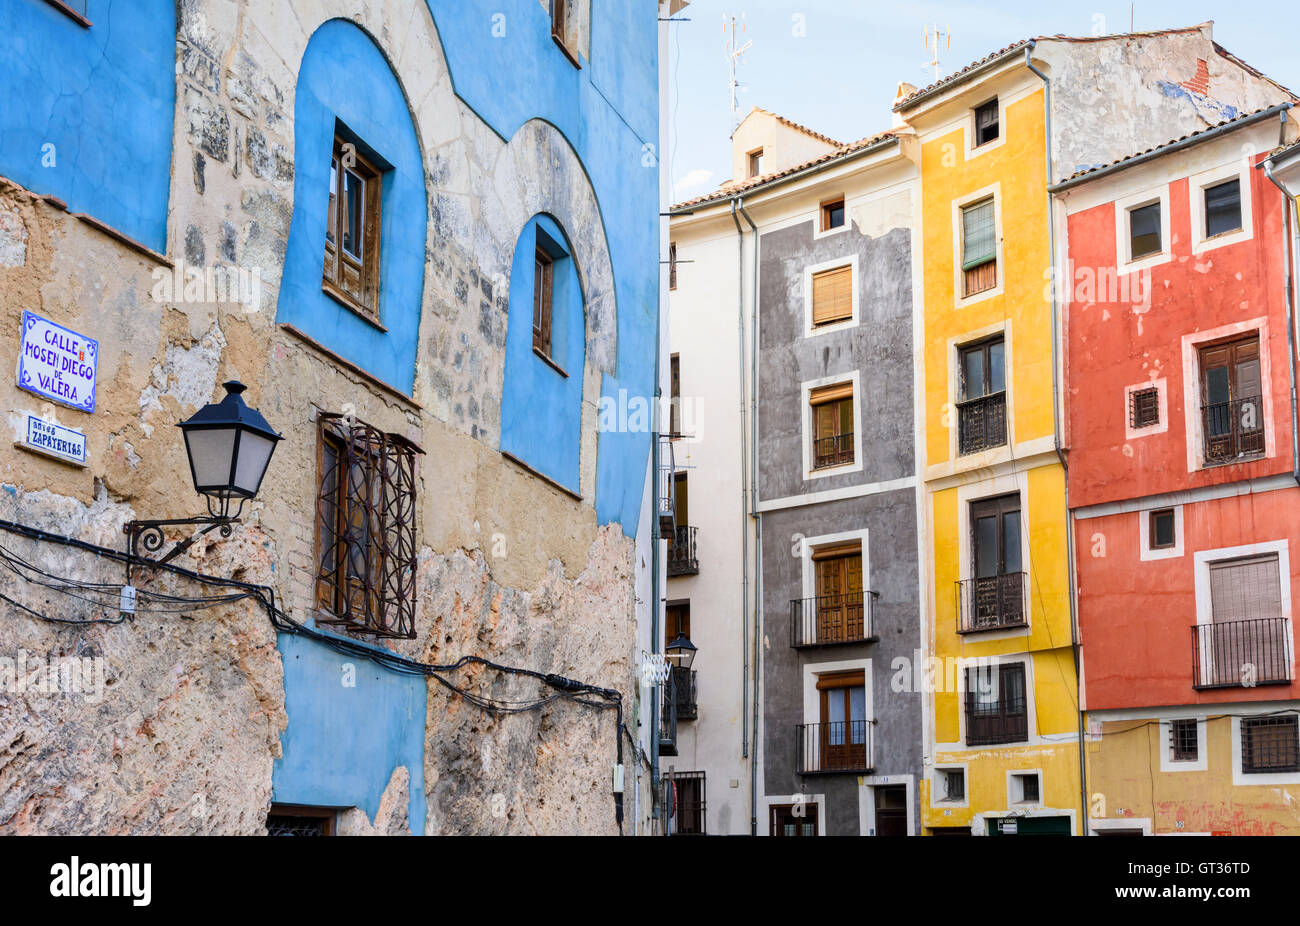 Case colorate di Calle Mosen Diego de Valera e Alfonso VIII street, Cuenca, Castilla La Mancha, in Spagna Foto Stock